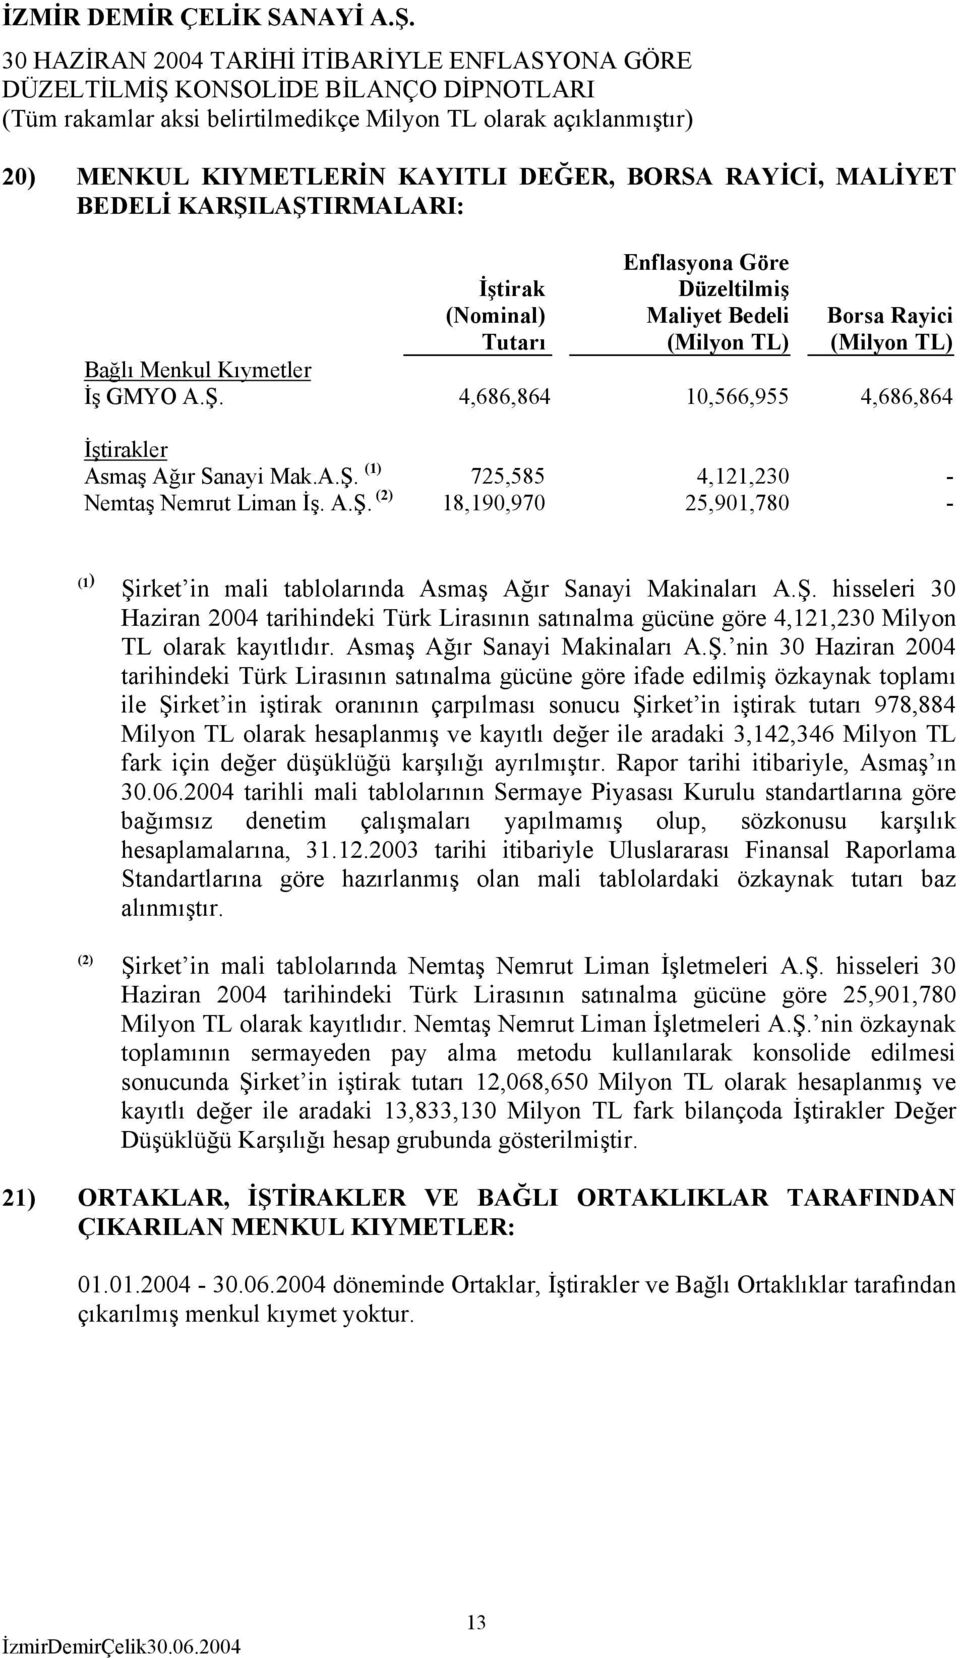 Ş. hisseleri 30 Haziran 2004 tarihindeki Türk Lirasının satınalma gücüne göre 4,121,230 Milyon TL olarak kayıtlıdır. Asmaş Ağır Sanayi Makinaları A.Ş. nin 30 Haziran 2004 tarihindeki Türk Lirasının